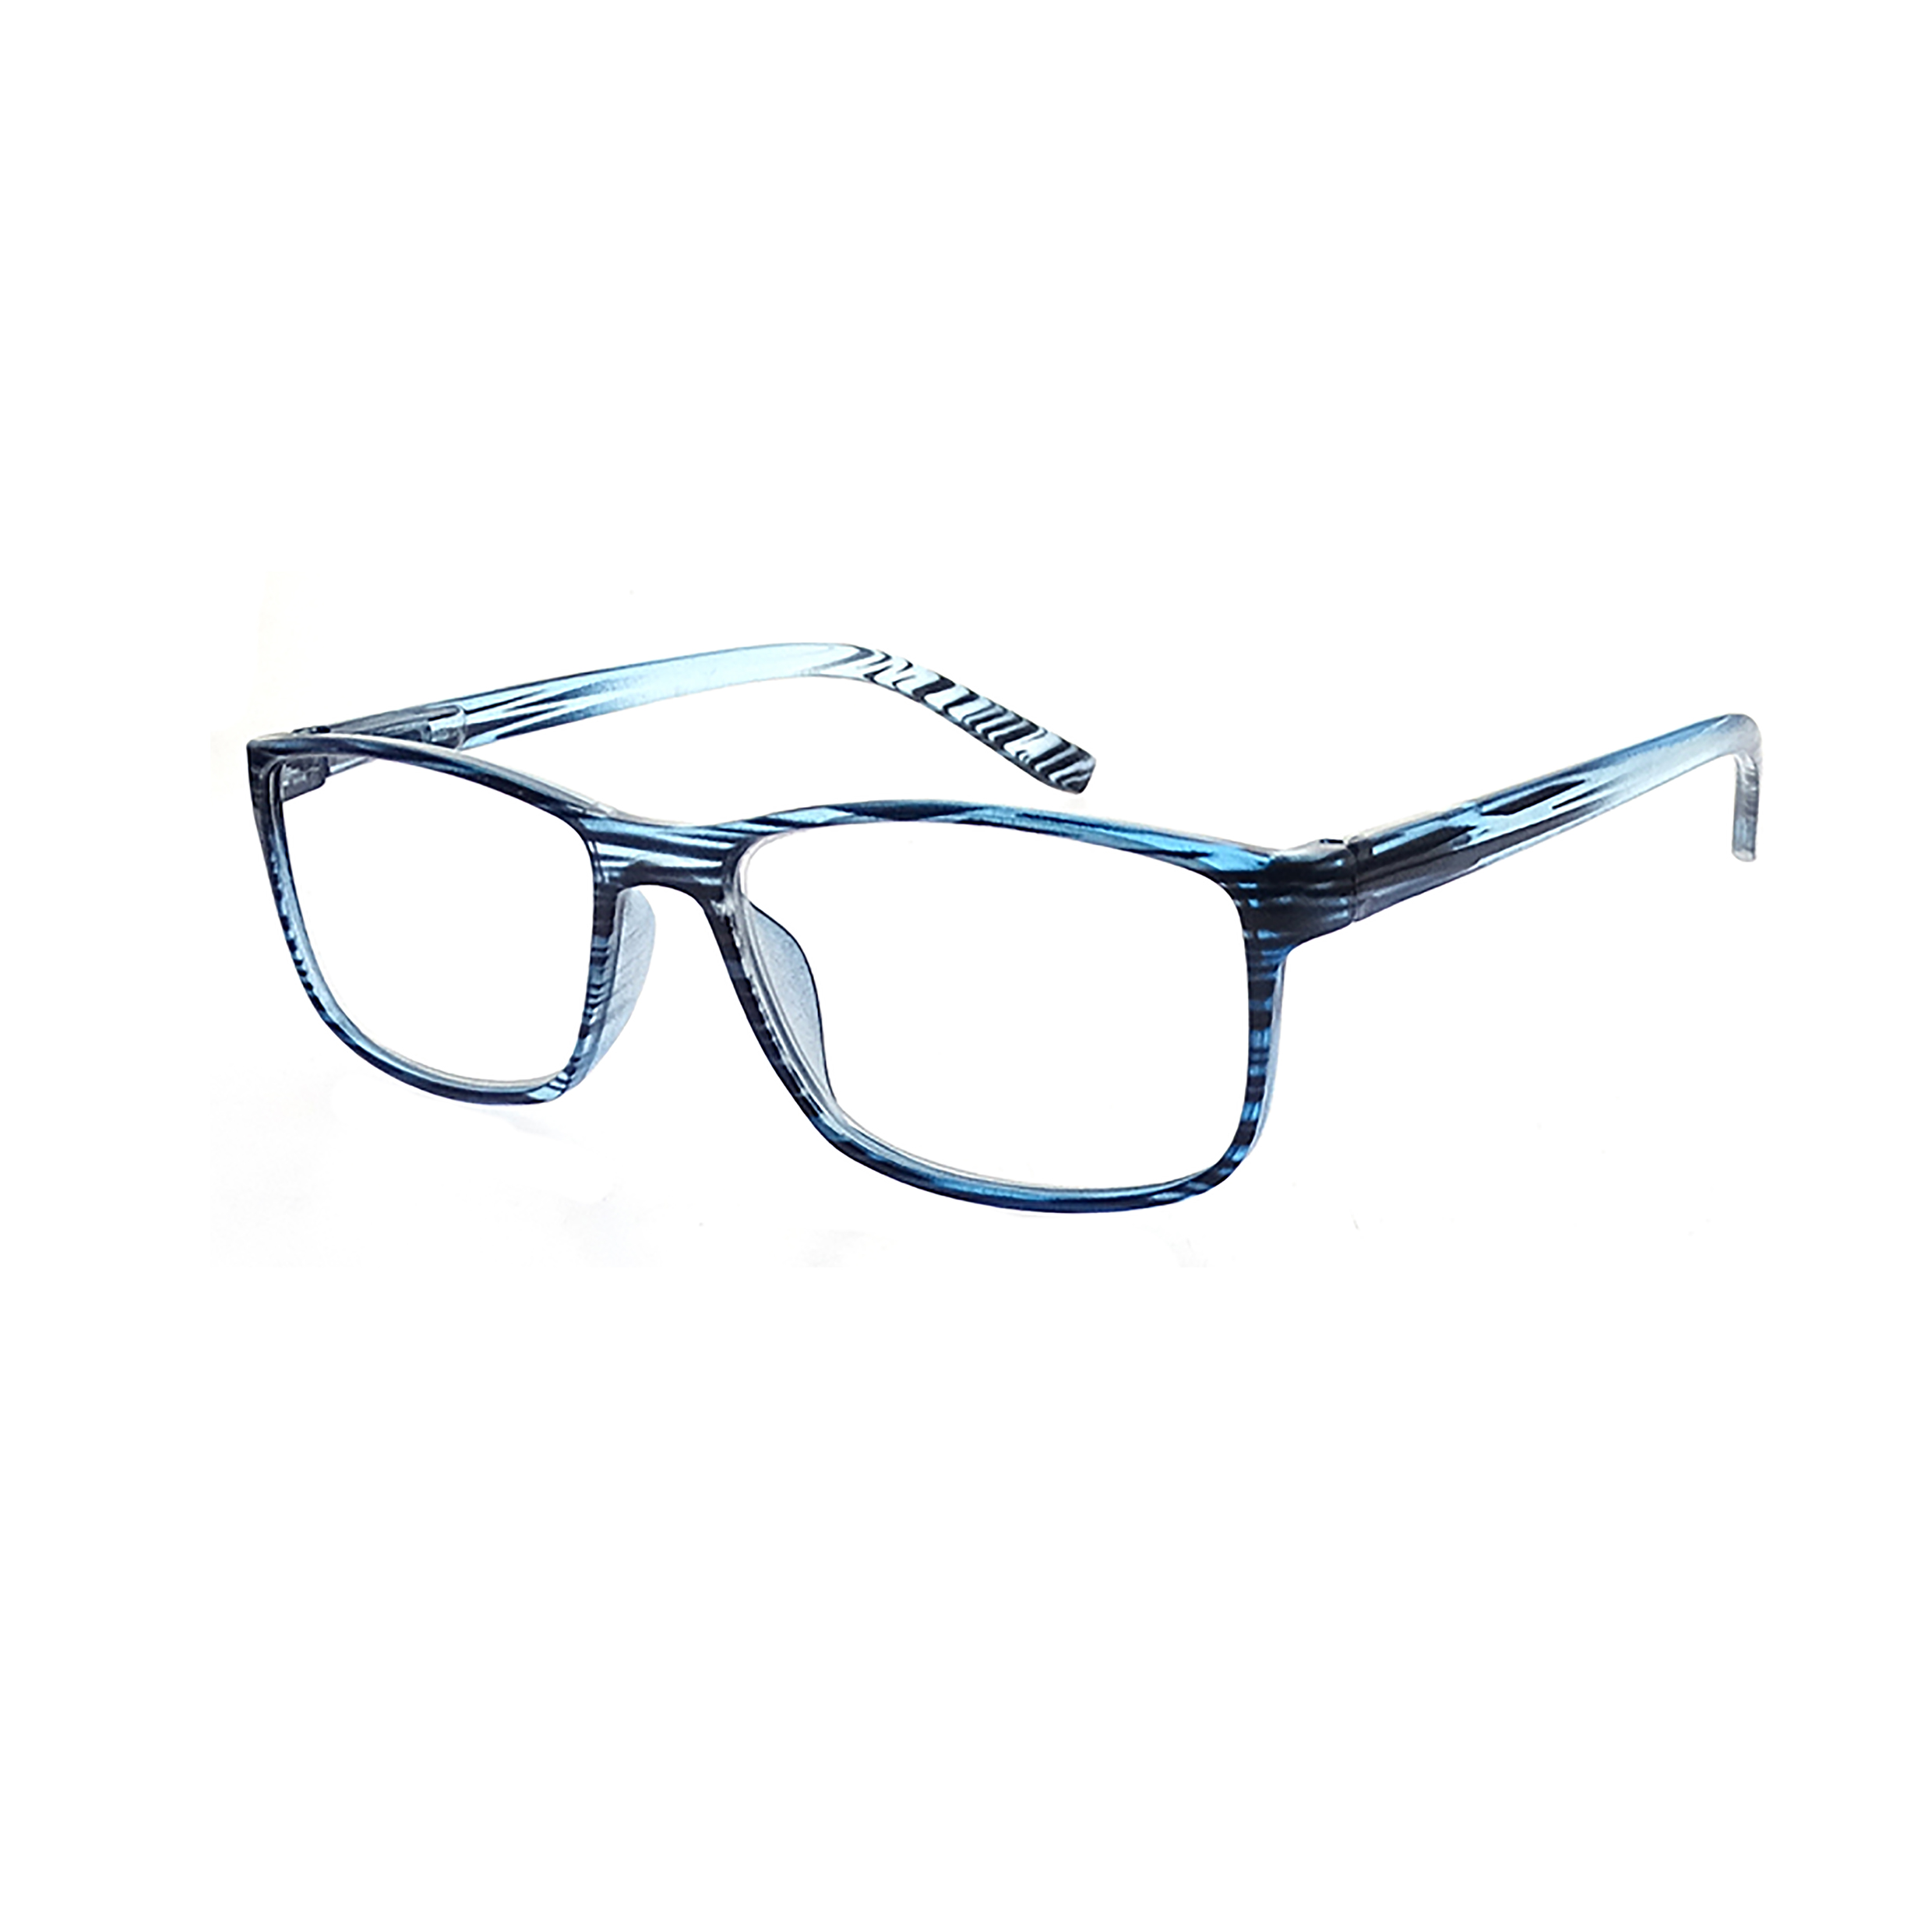 Marco óptico circular de gafas de alta calidad para el ocio LR-P5619